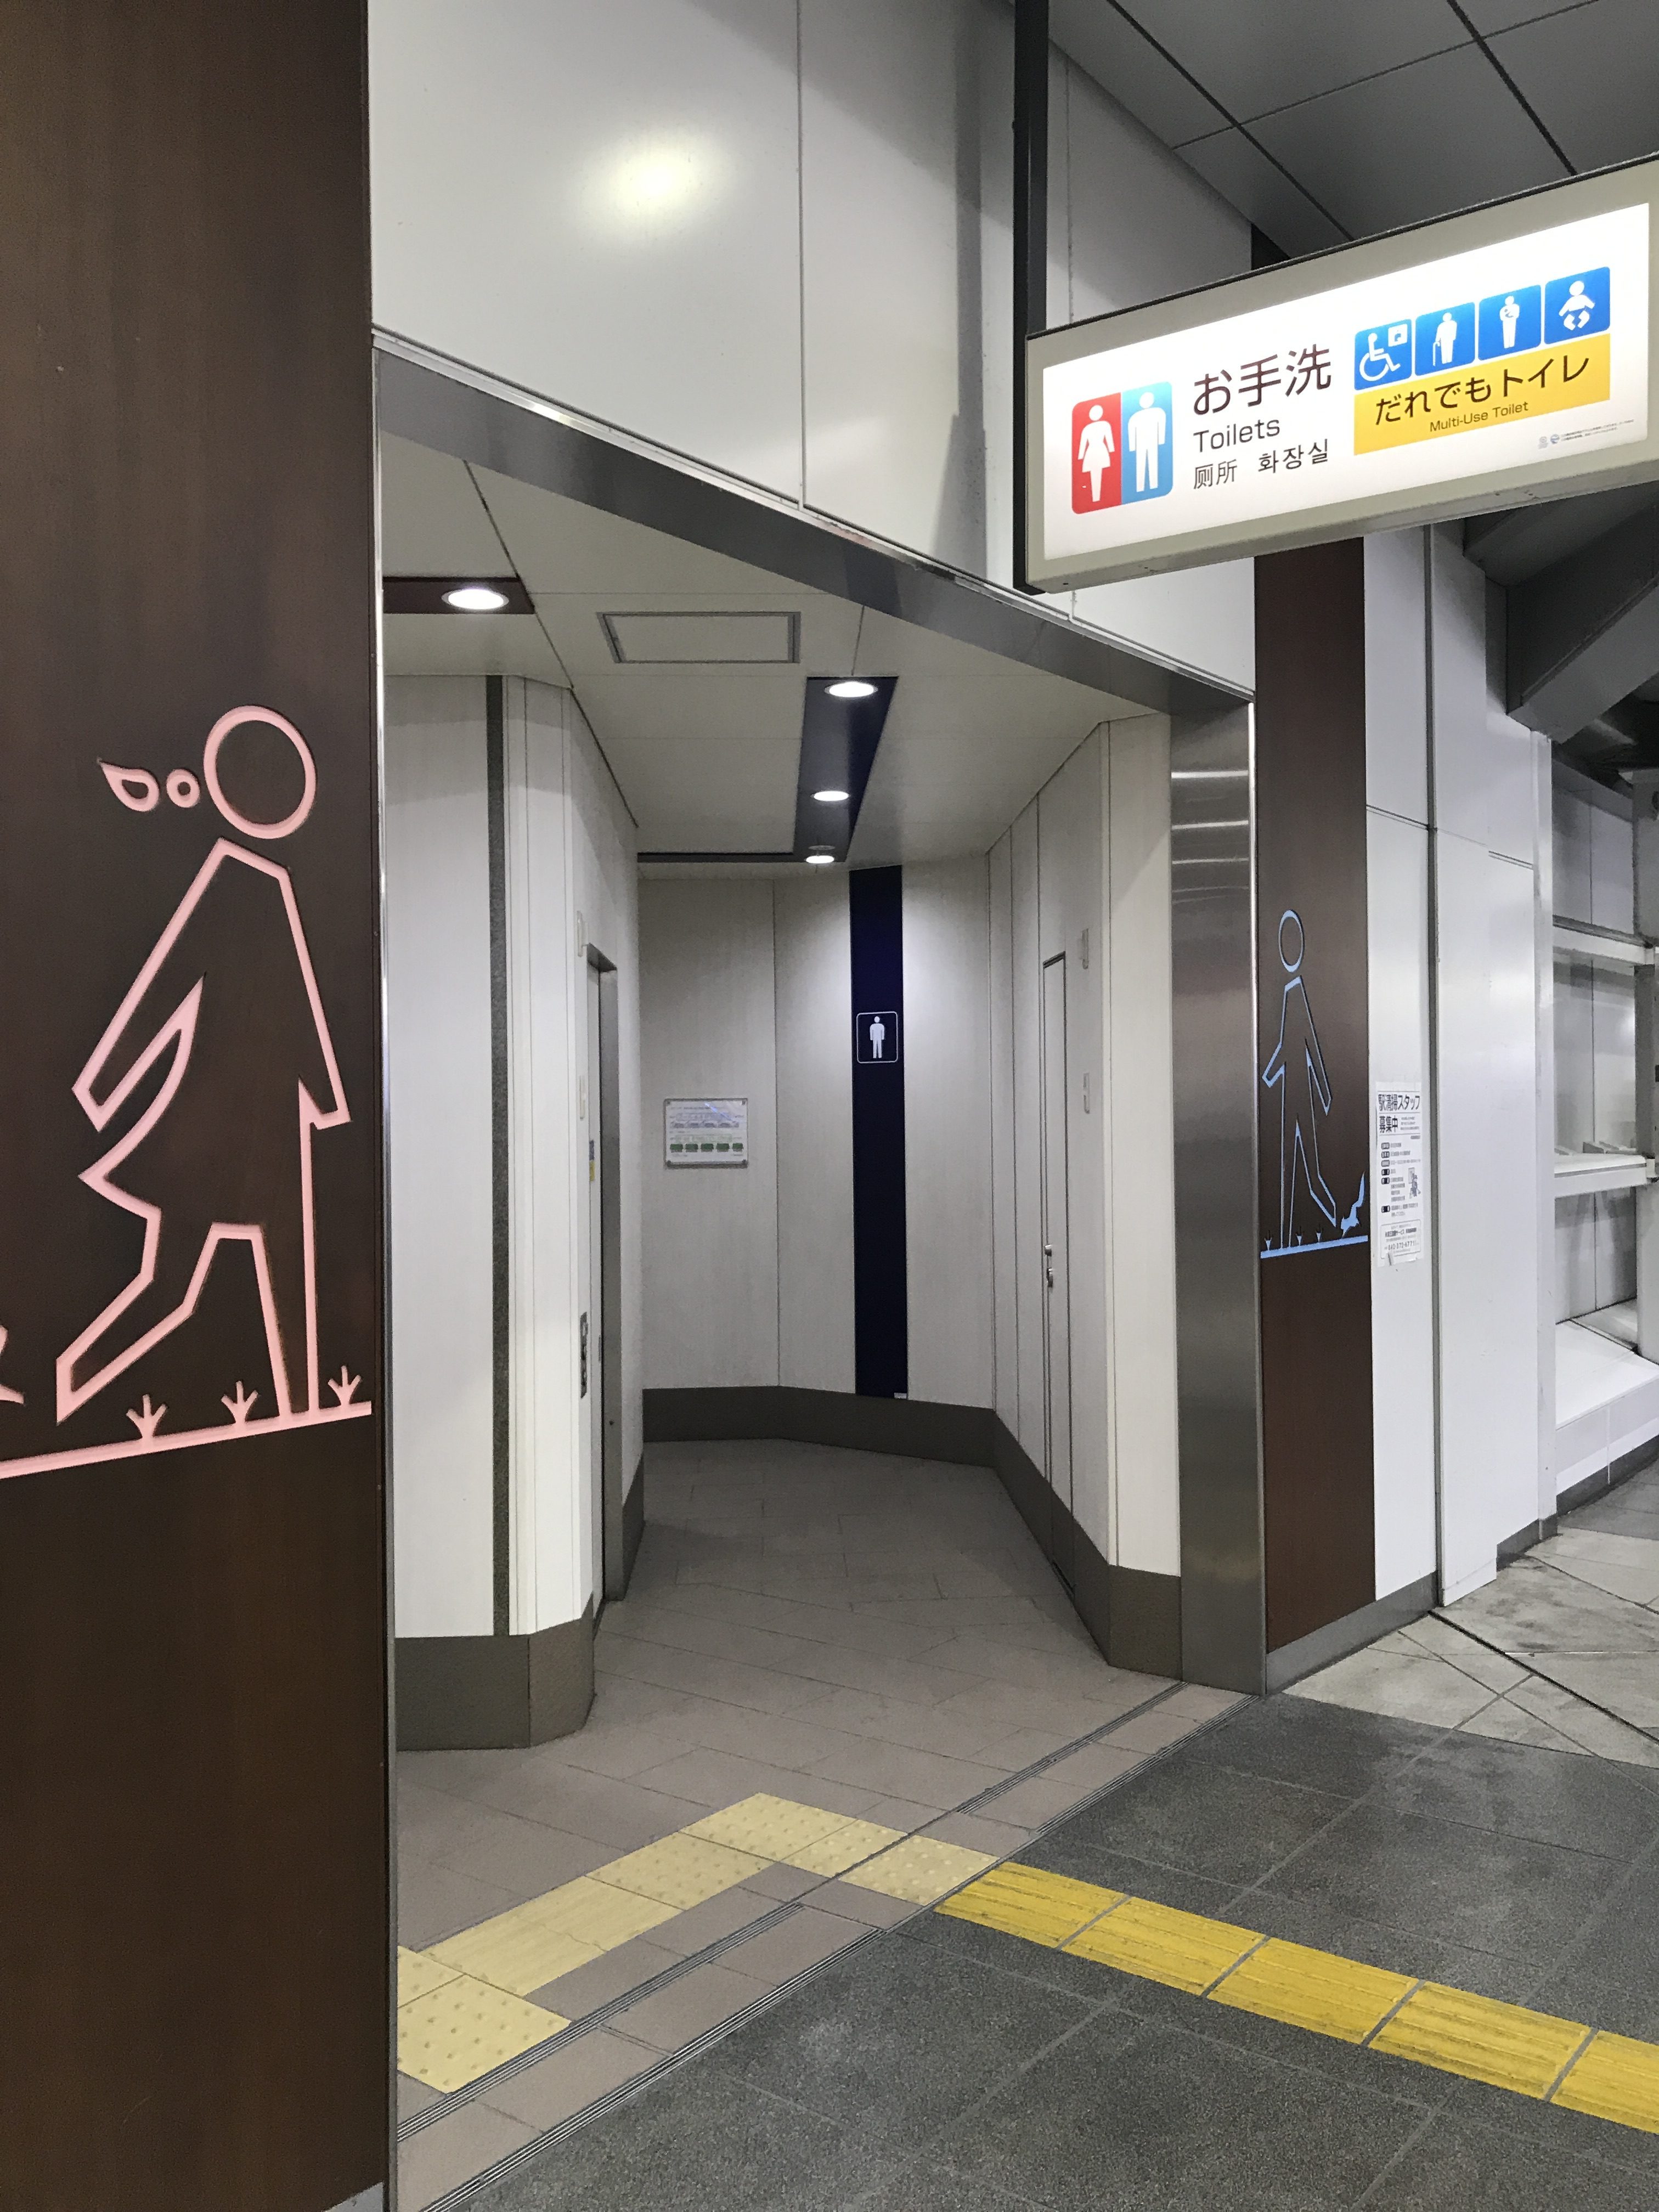 吉祥寺駅、京王井の頭線の多目的トイレ sotonie / ソトニー